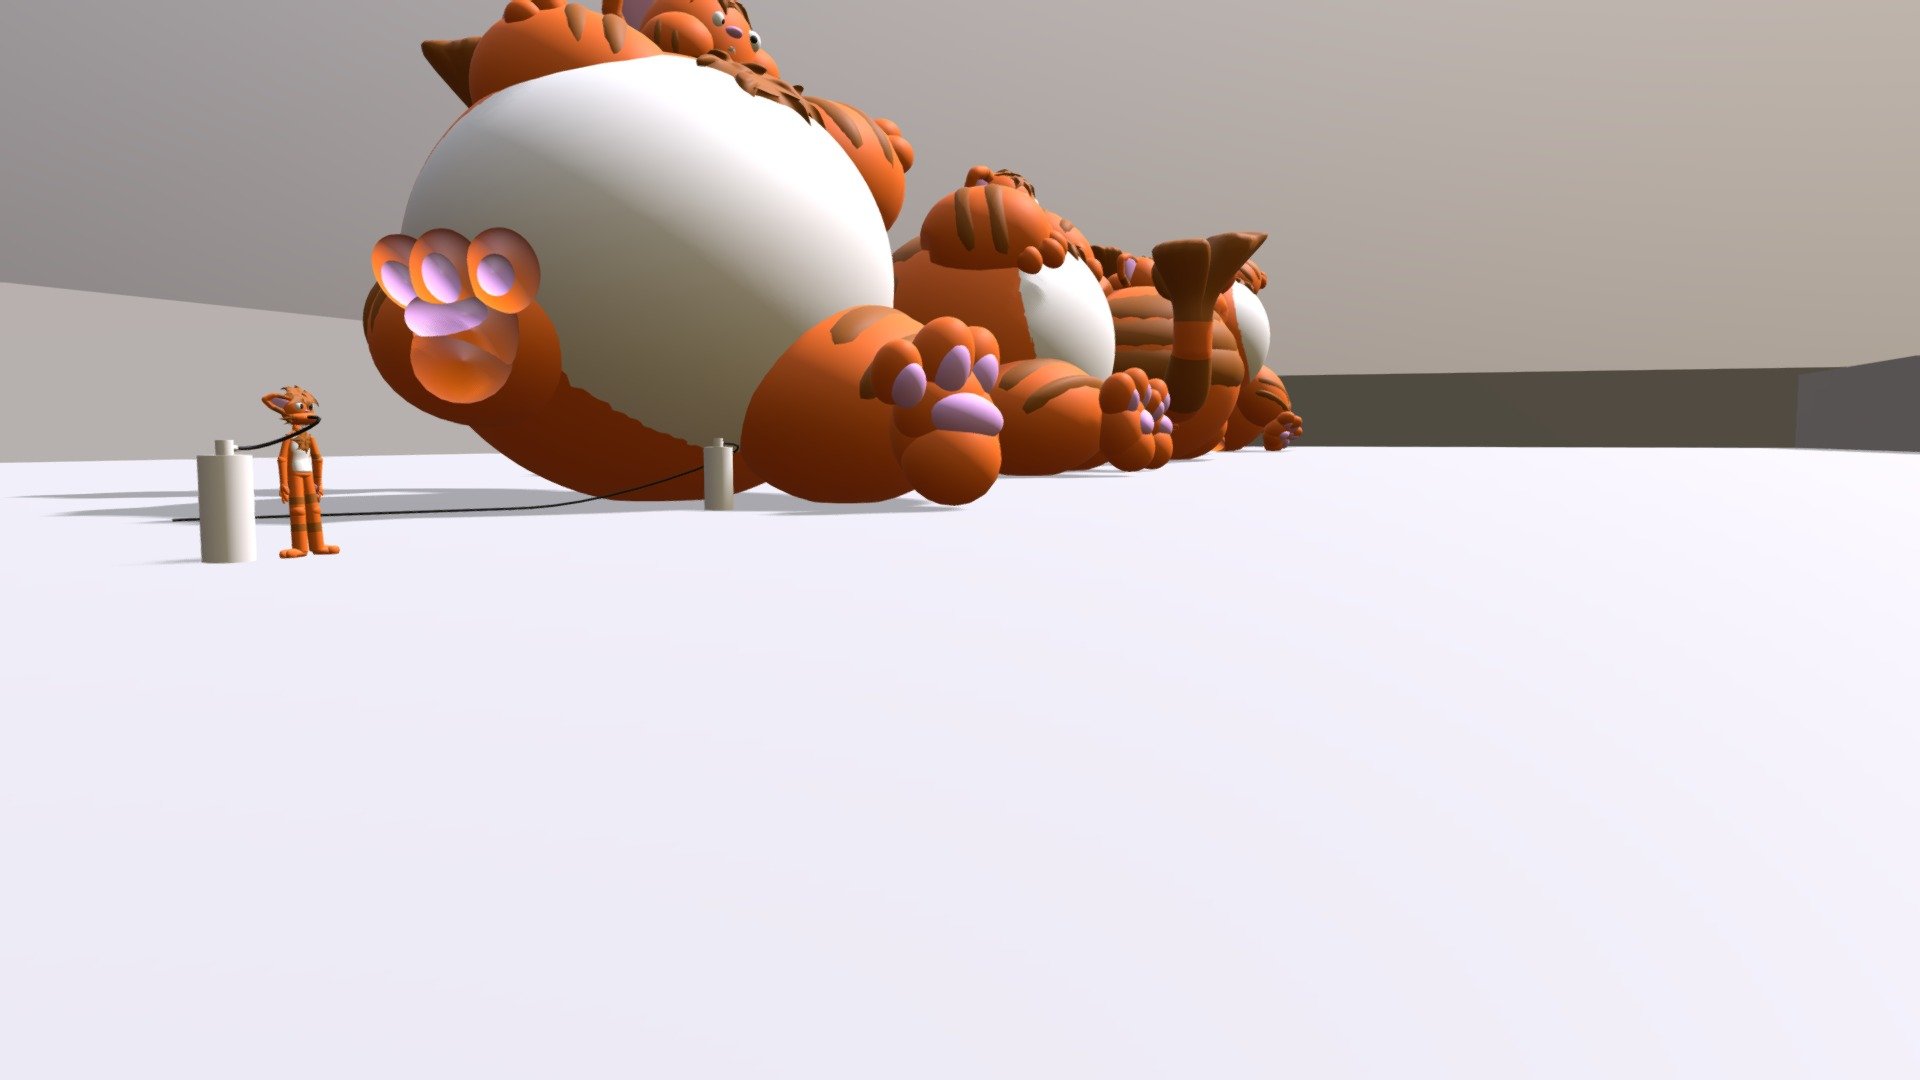 Cat Inflation - 3D model by pneumat (@pneumat) [b8a4dd9]